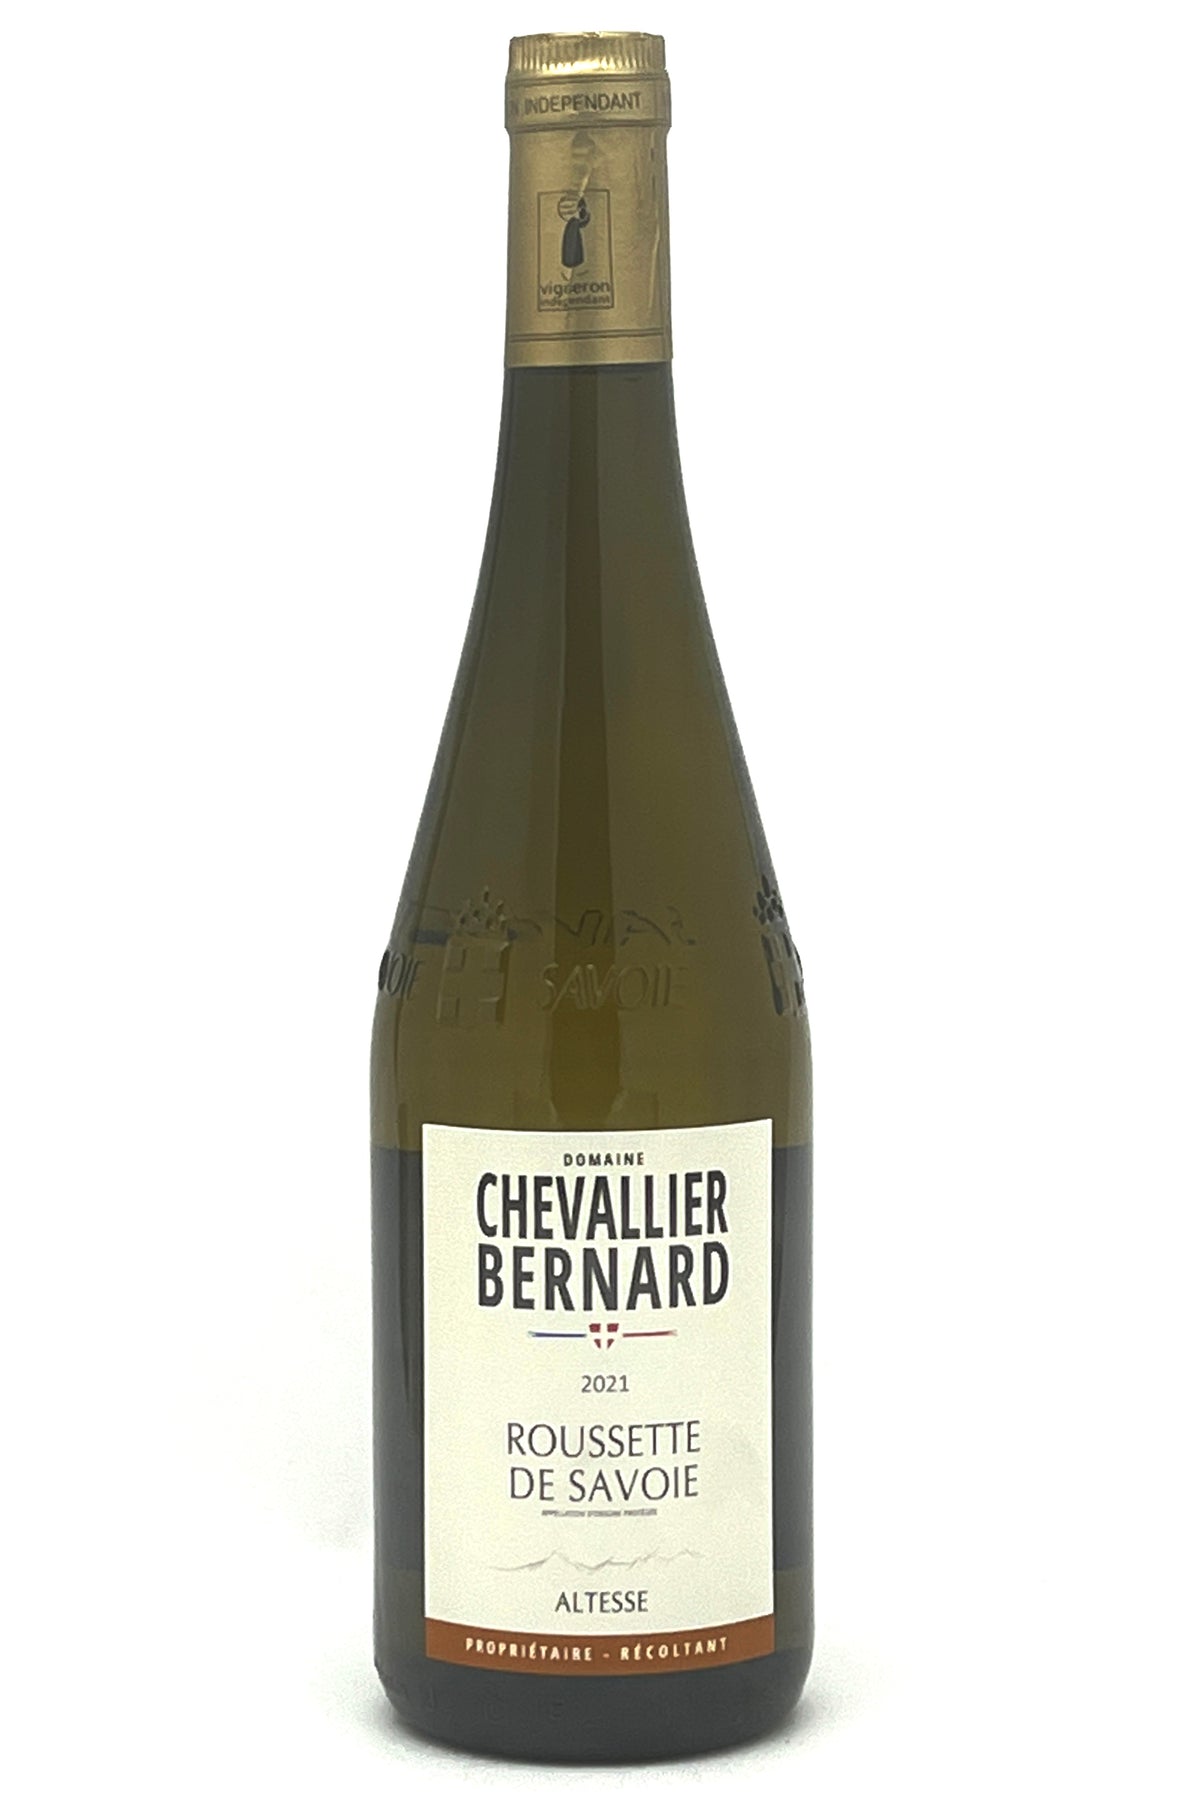 Domaine Chevallier-Bernard 2021 Roussette de Savoie